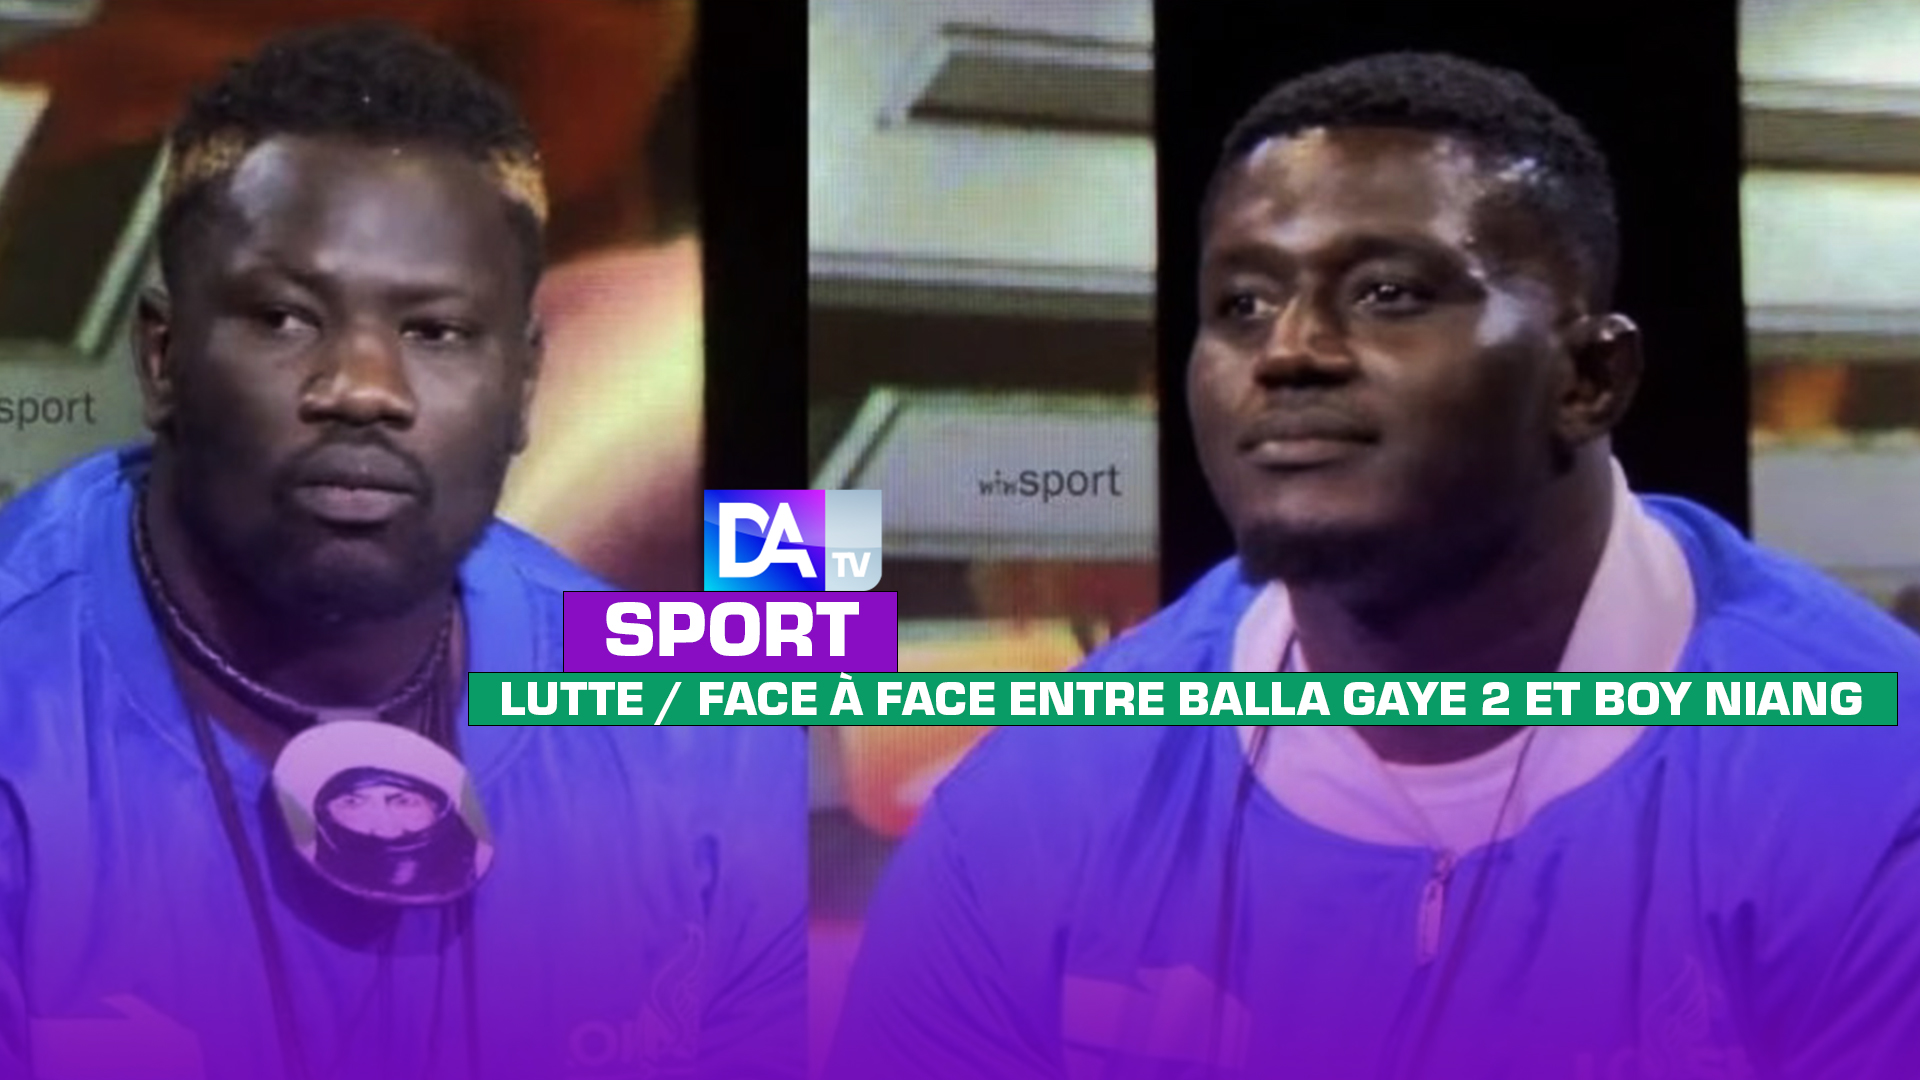 Lutte : Le face à face entre Balla Gaye 2 et Boy Niang tourne au fiasco suite à l’absence injustifiée du Pikinois…